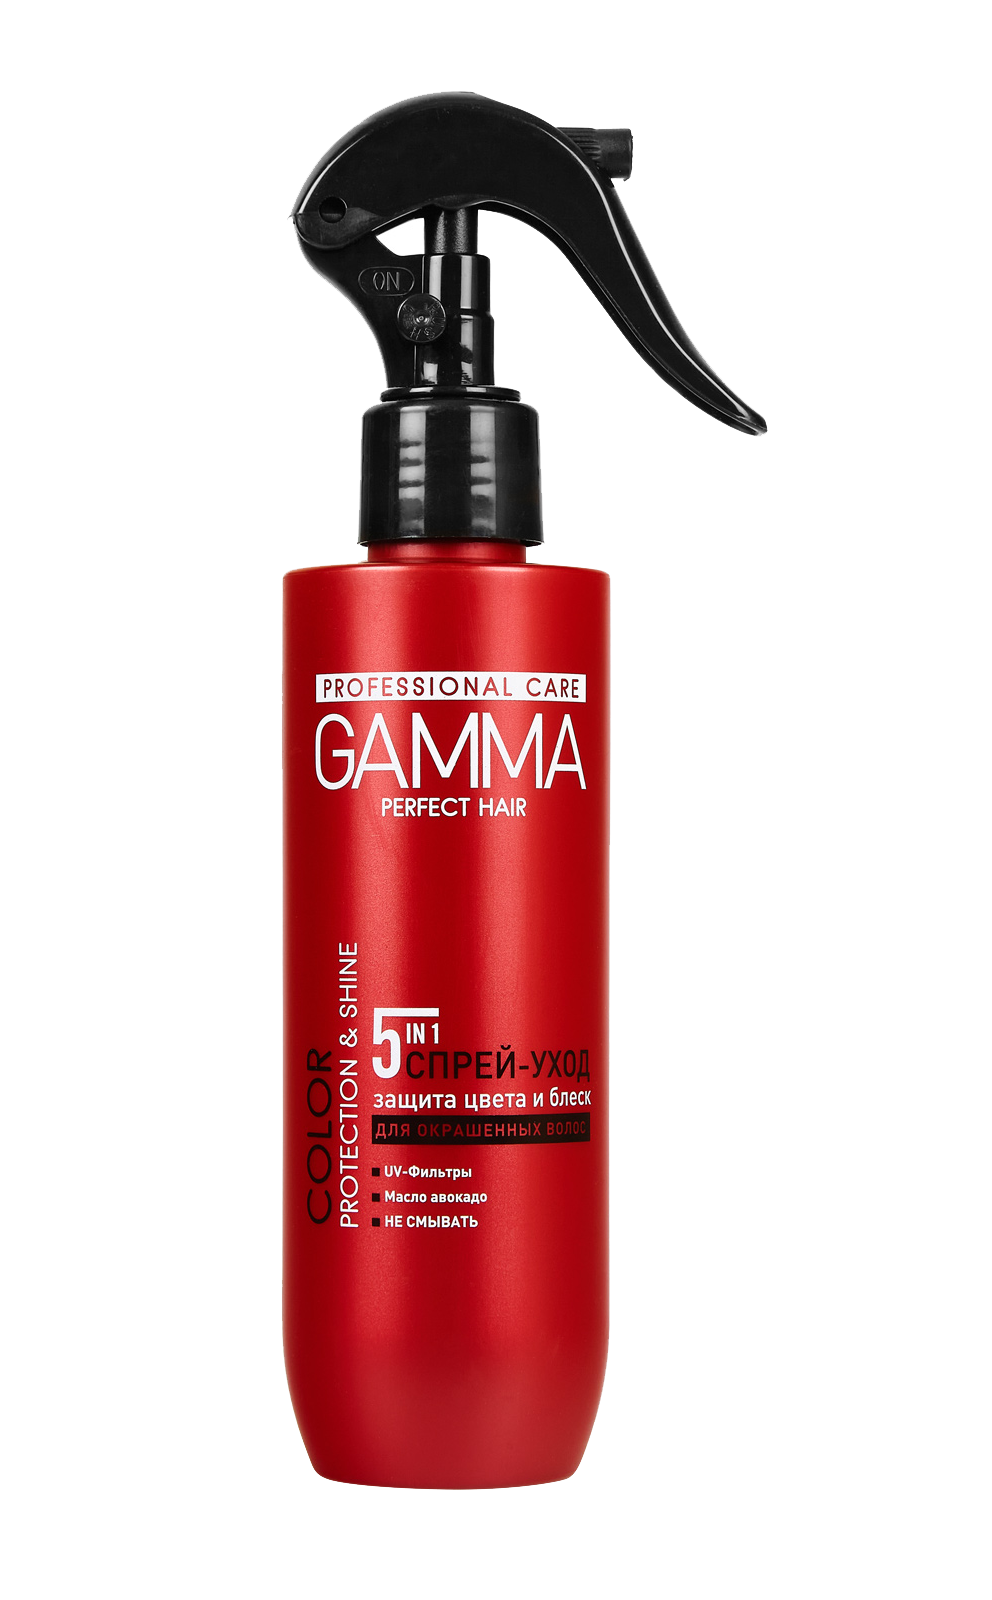 Спрей-уход для окрашенных волос GAMMA Perfect Hair защита цвета и блеск